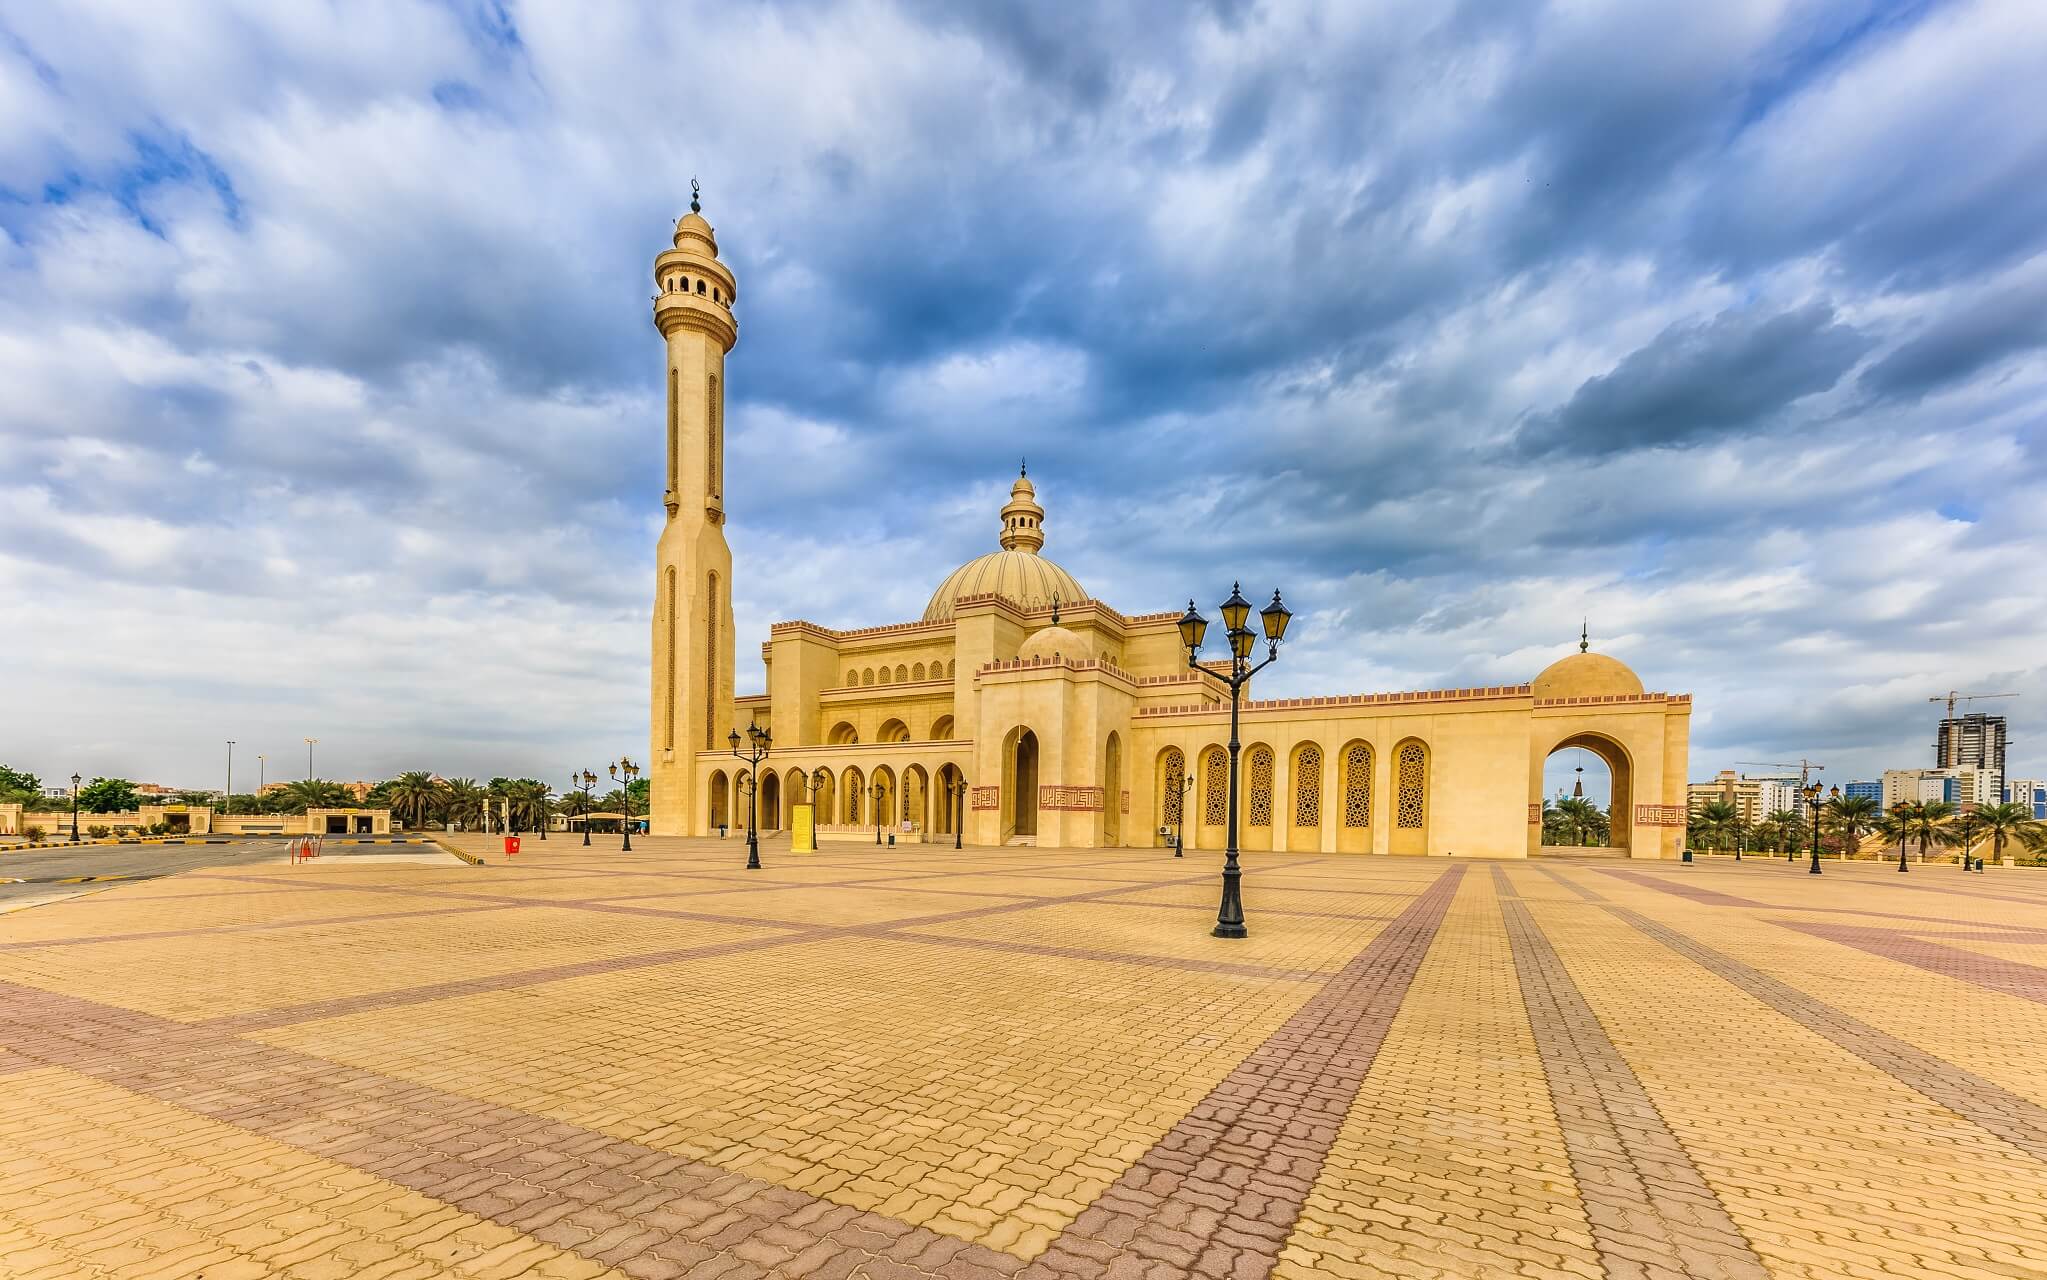 ahmed-al-fateh-islamic-center-mit-der-al-faith-mosque-bahrain-shutterstock_763998748.jpg